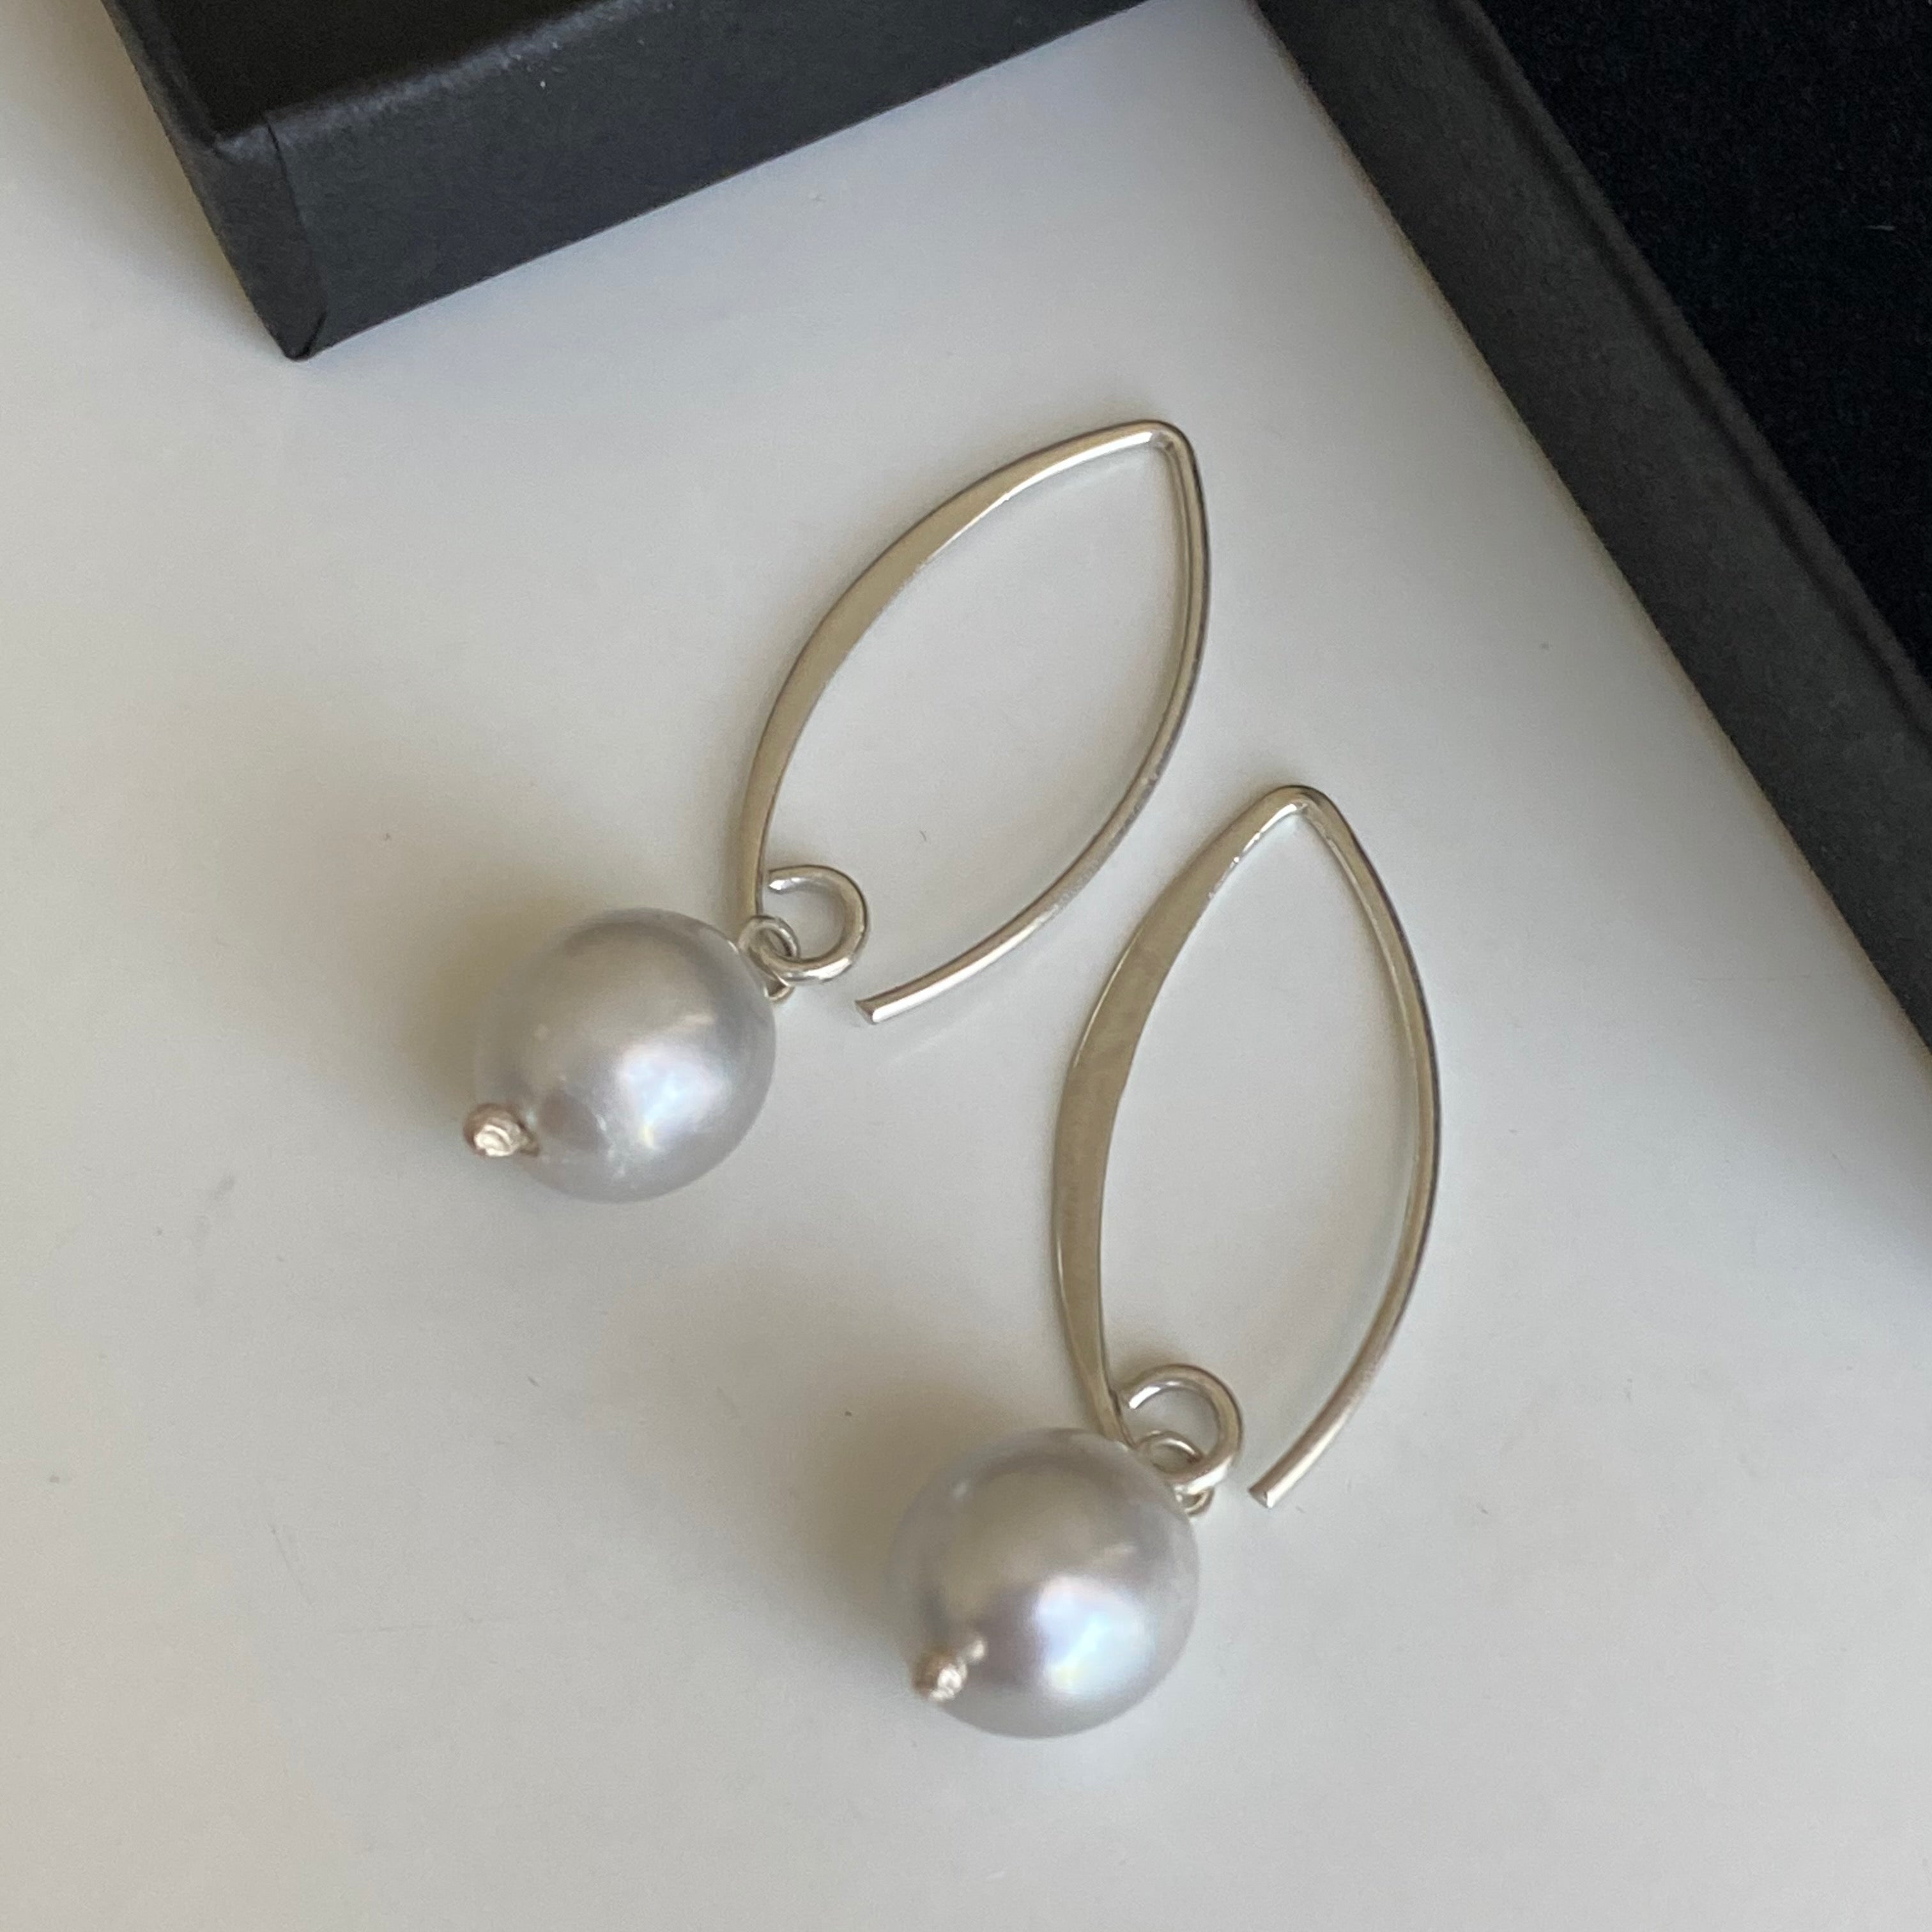 Sterling Silver Threader Hook Earrings - Grey Pearl